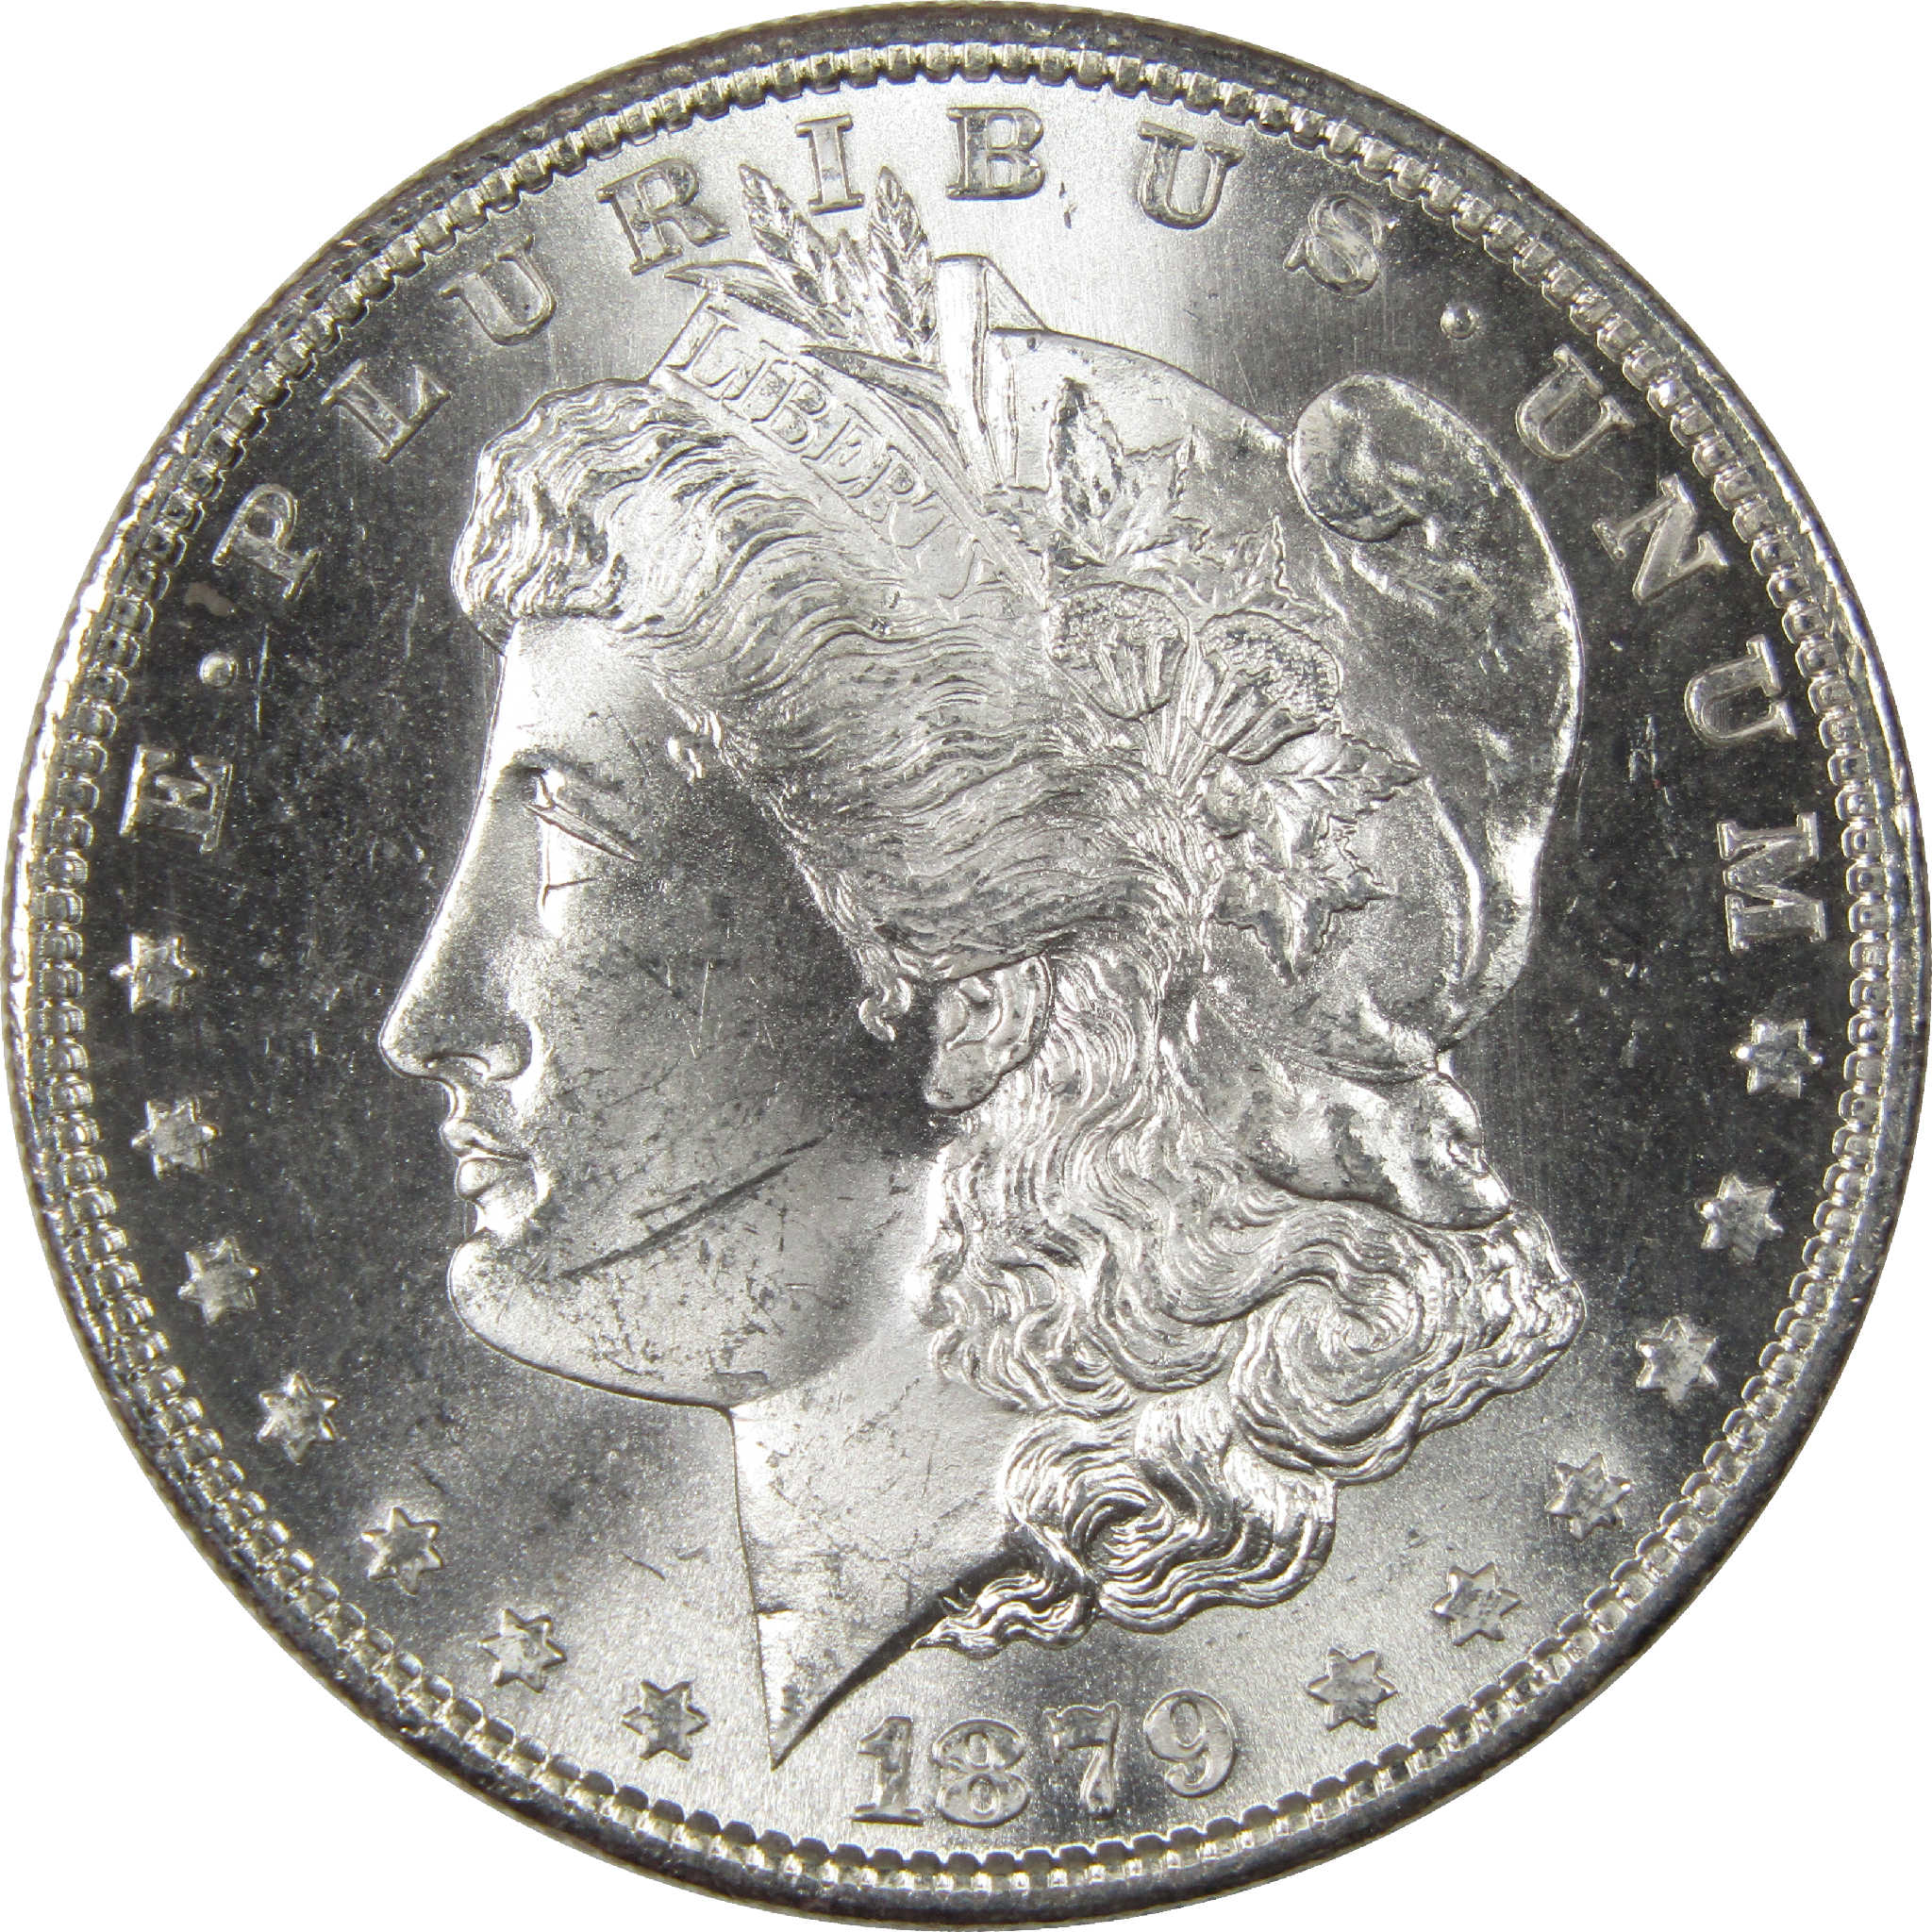 1879 S Morgan Dollar Uncirculated Silver $1 Coin - Morgan coin - Morgan silver dollar - Morgan silver dollar for sale - Profile Coins &amp; Collectibles